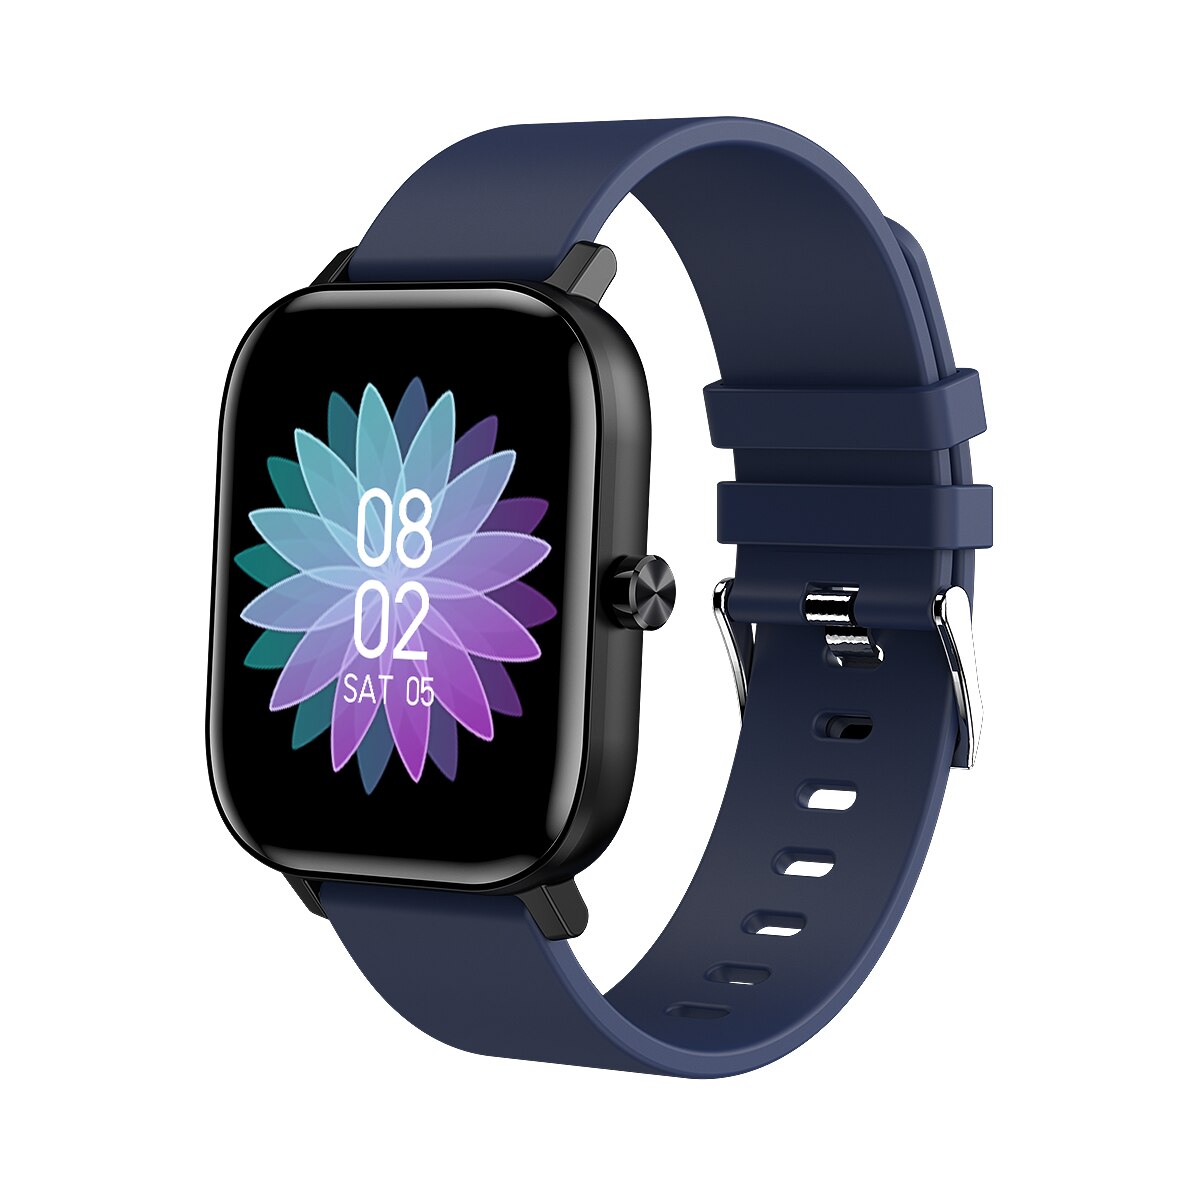 Clever Uhr Männer Frauen I10 1.54 "voll berühren Bildschirm Bluetooth Anruf Smartwatch Herz Bewertung Blutdruck Monitor für Android IOS: Blau Silikon